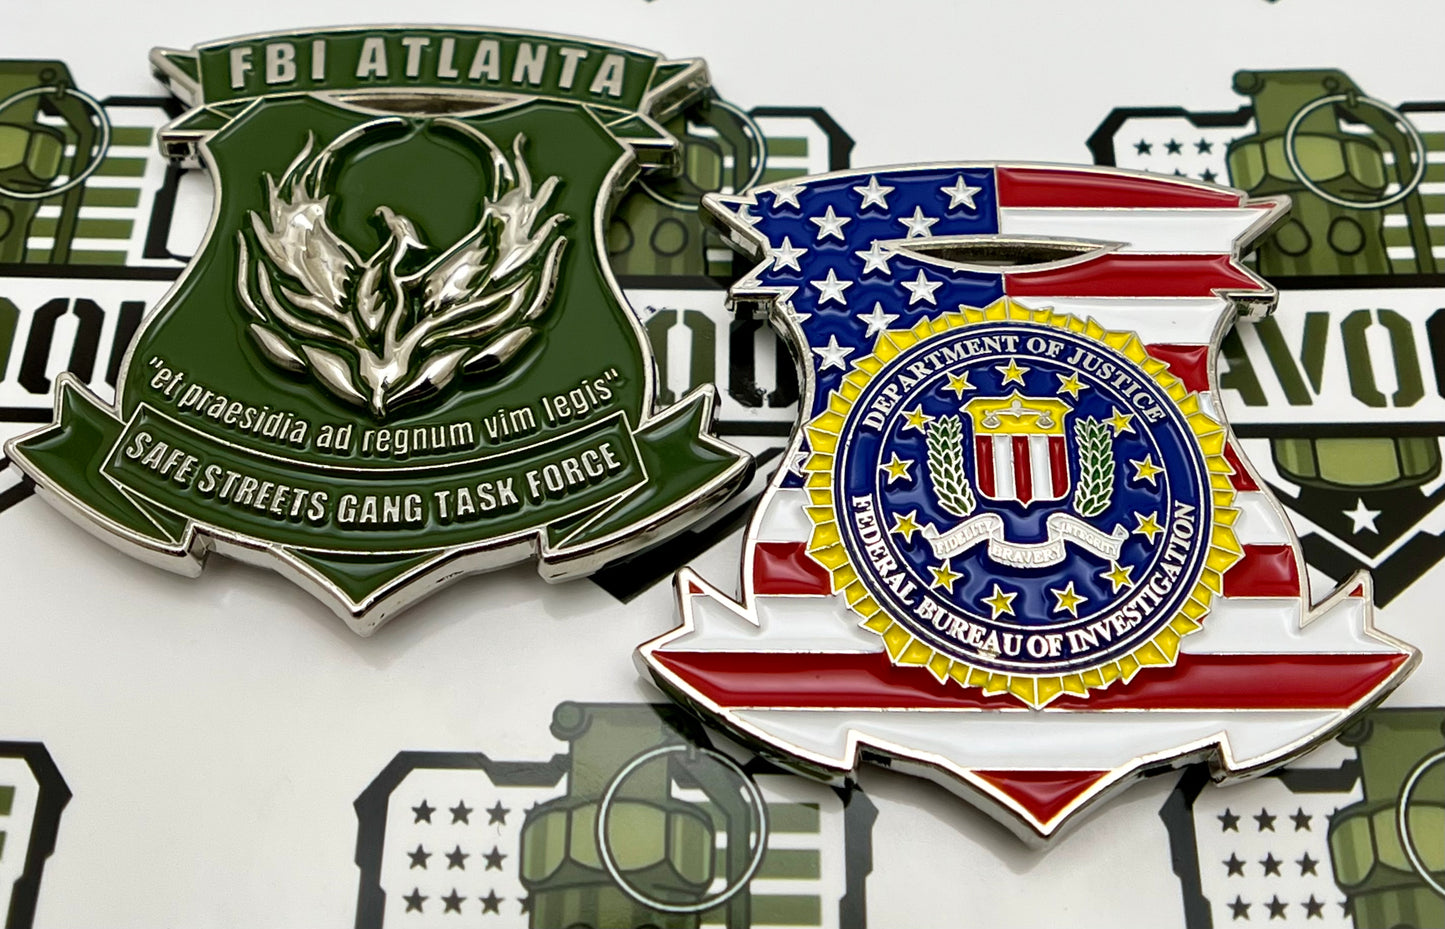 Federal Bureau of Investigation (FBI), Atlanta Field Office, Safe Streets Gang Task Force (SSGTF) Challenge Coin